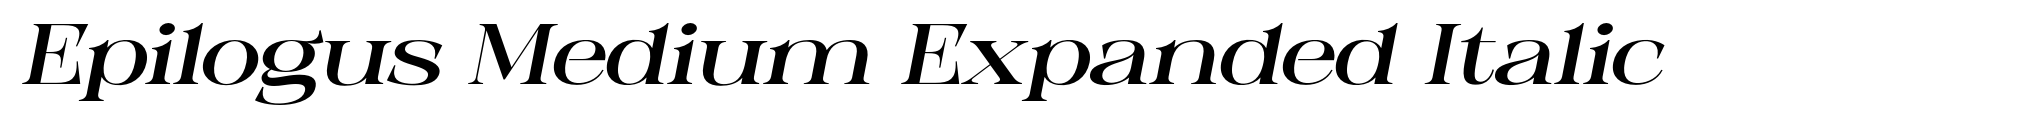 Epilogus Medium Expanded Italic image